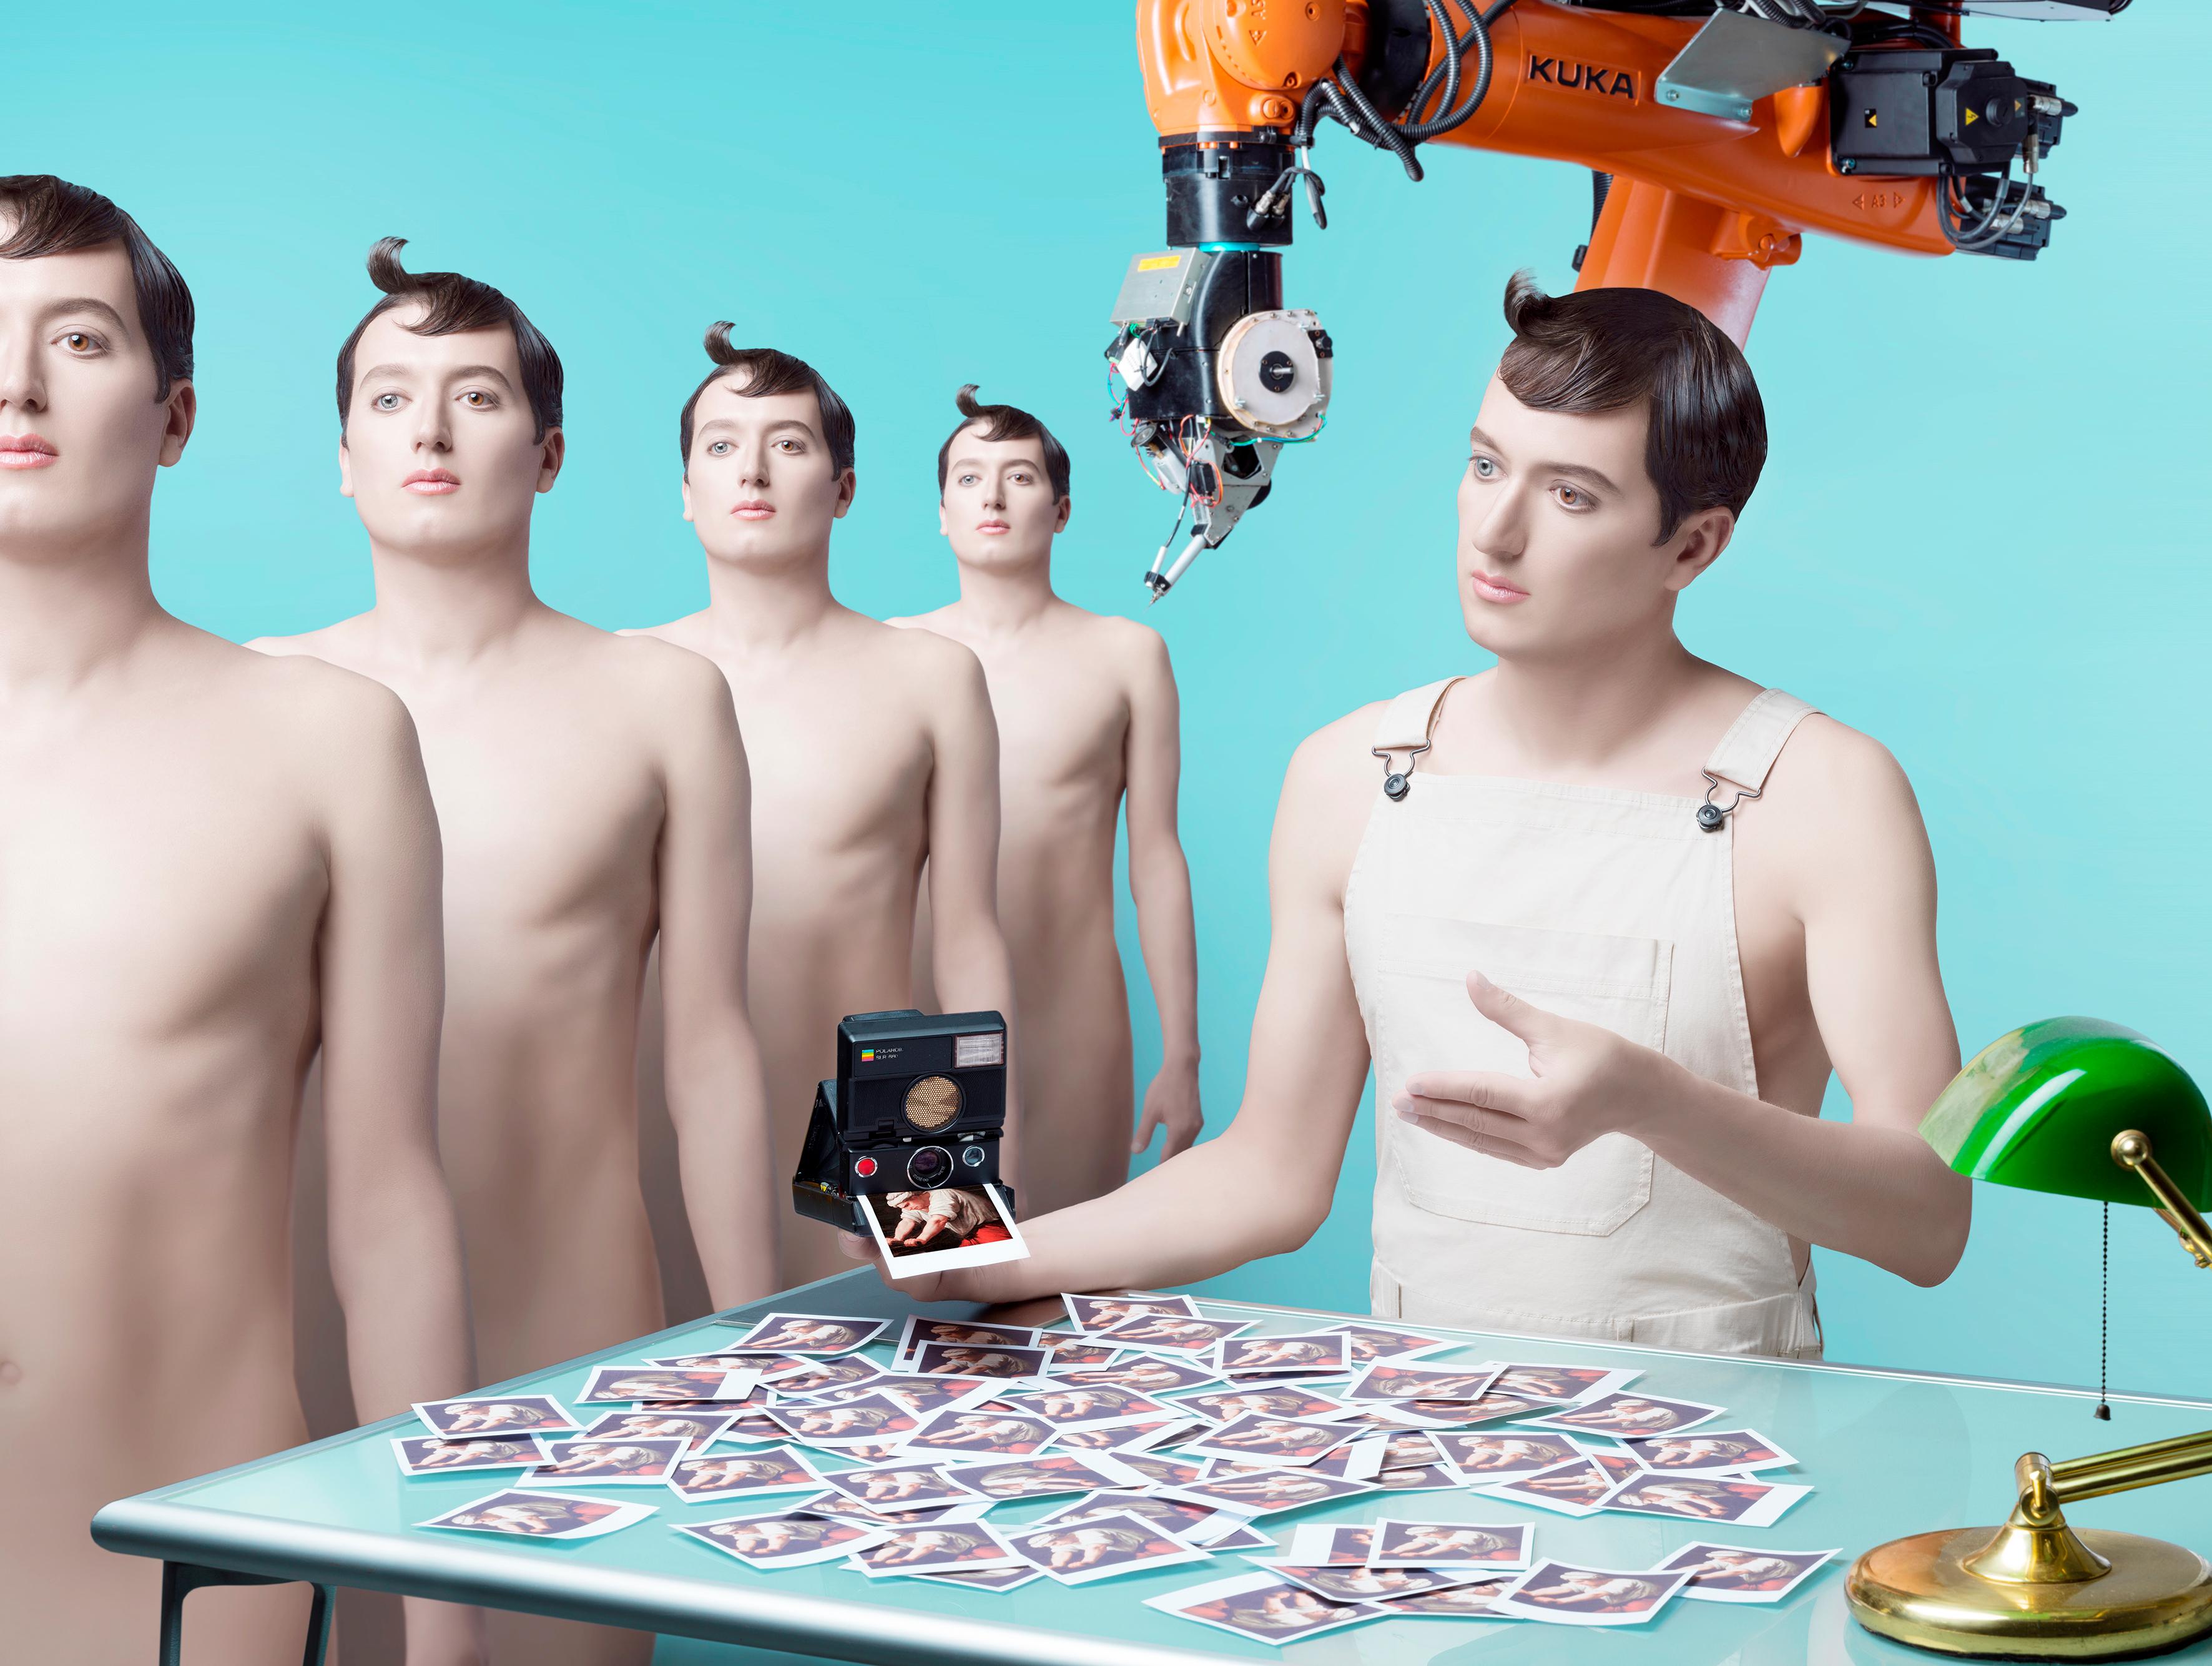 Monica Silva Figurative Print – Träumen androids von elektrischen Schafen?